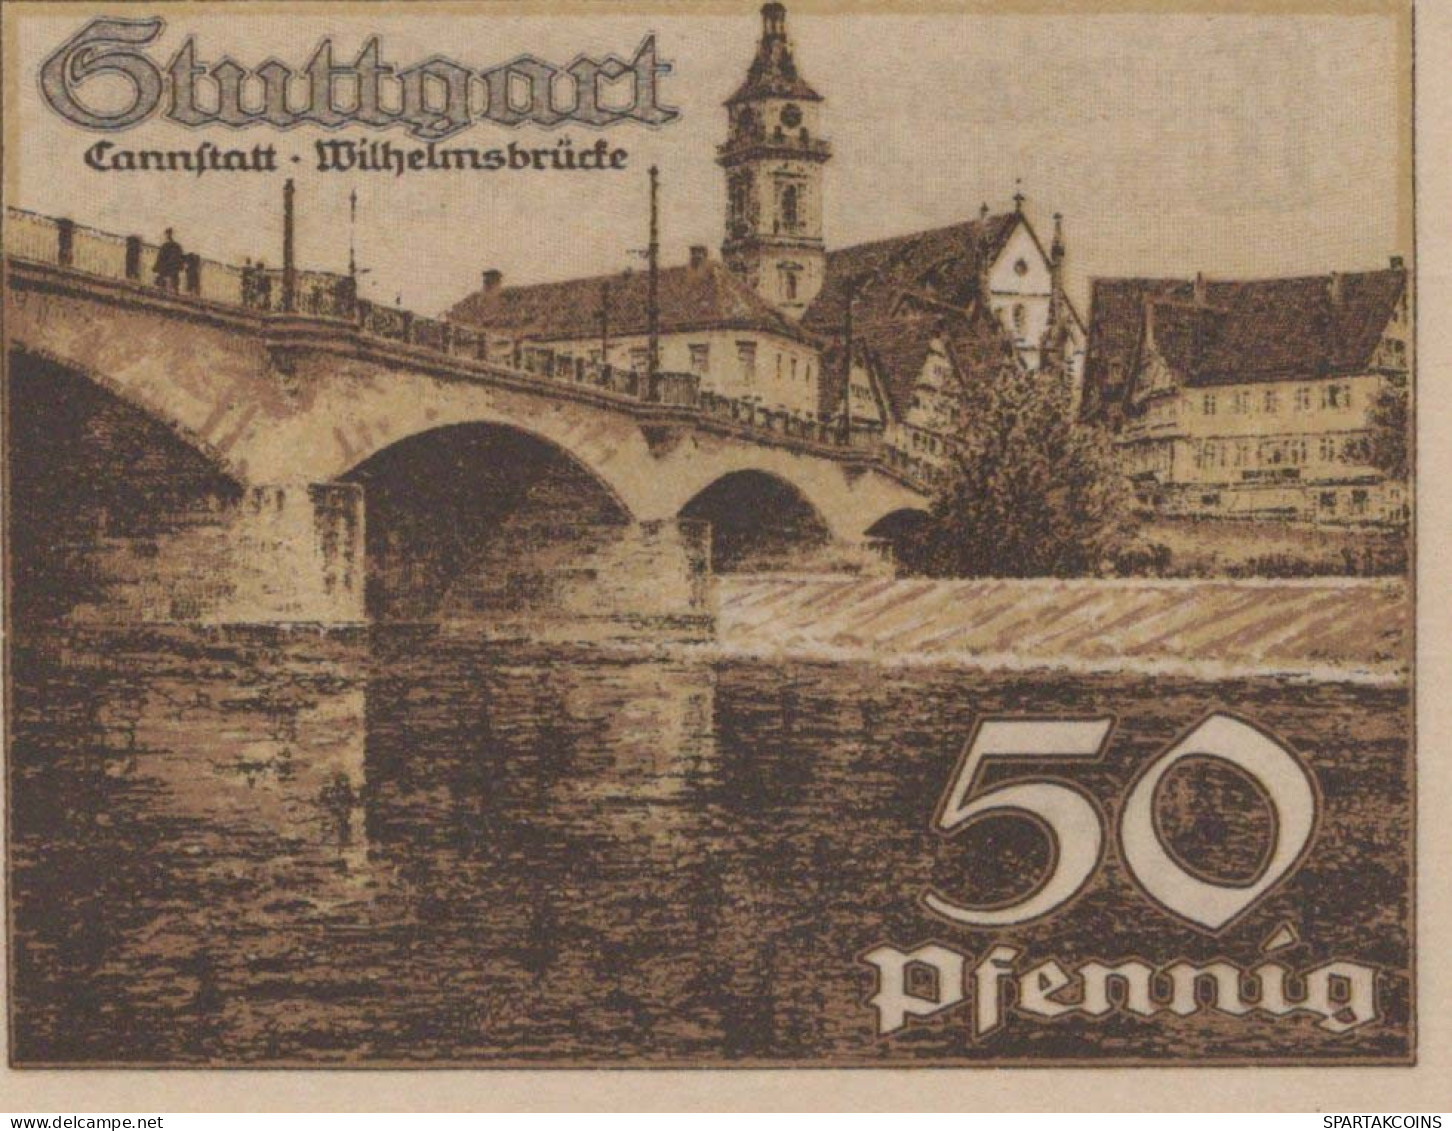 50 PFENNIG 1921 Stadt STUTTGART Württemberg UNC DEUTSCHLAND Notgeld #PC423 - [11] Local Banknote Issues